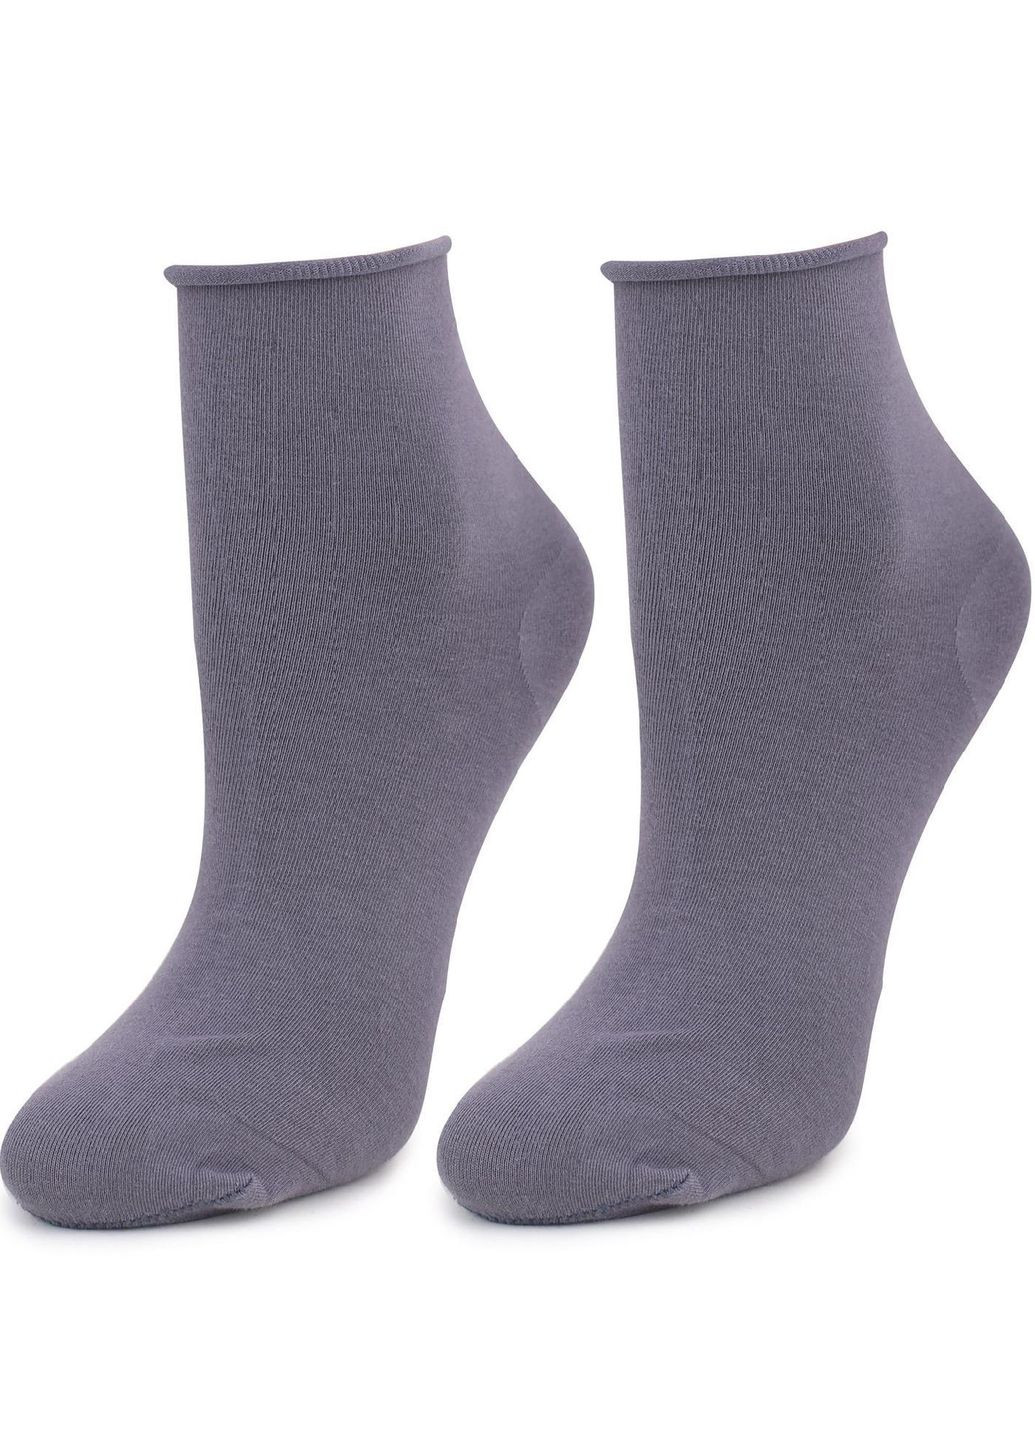 Хлопковые носки с послабленной резинкой Forte 948 No Stress gra Marilyn forte 948 no stress gray (266988099)